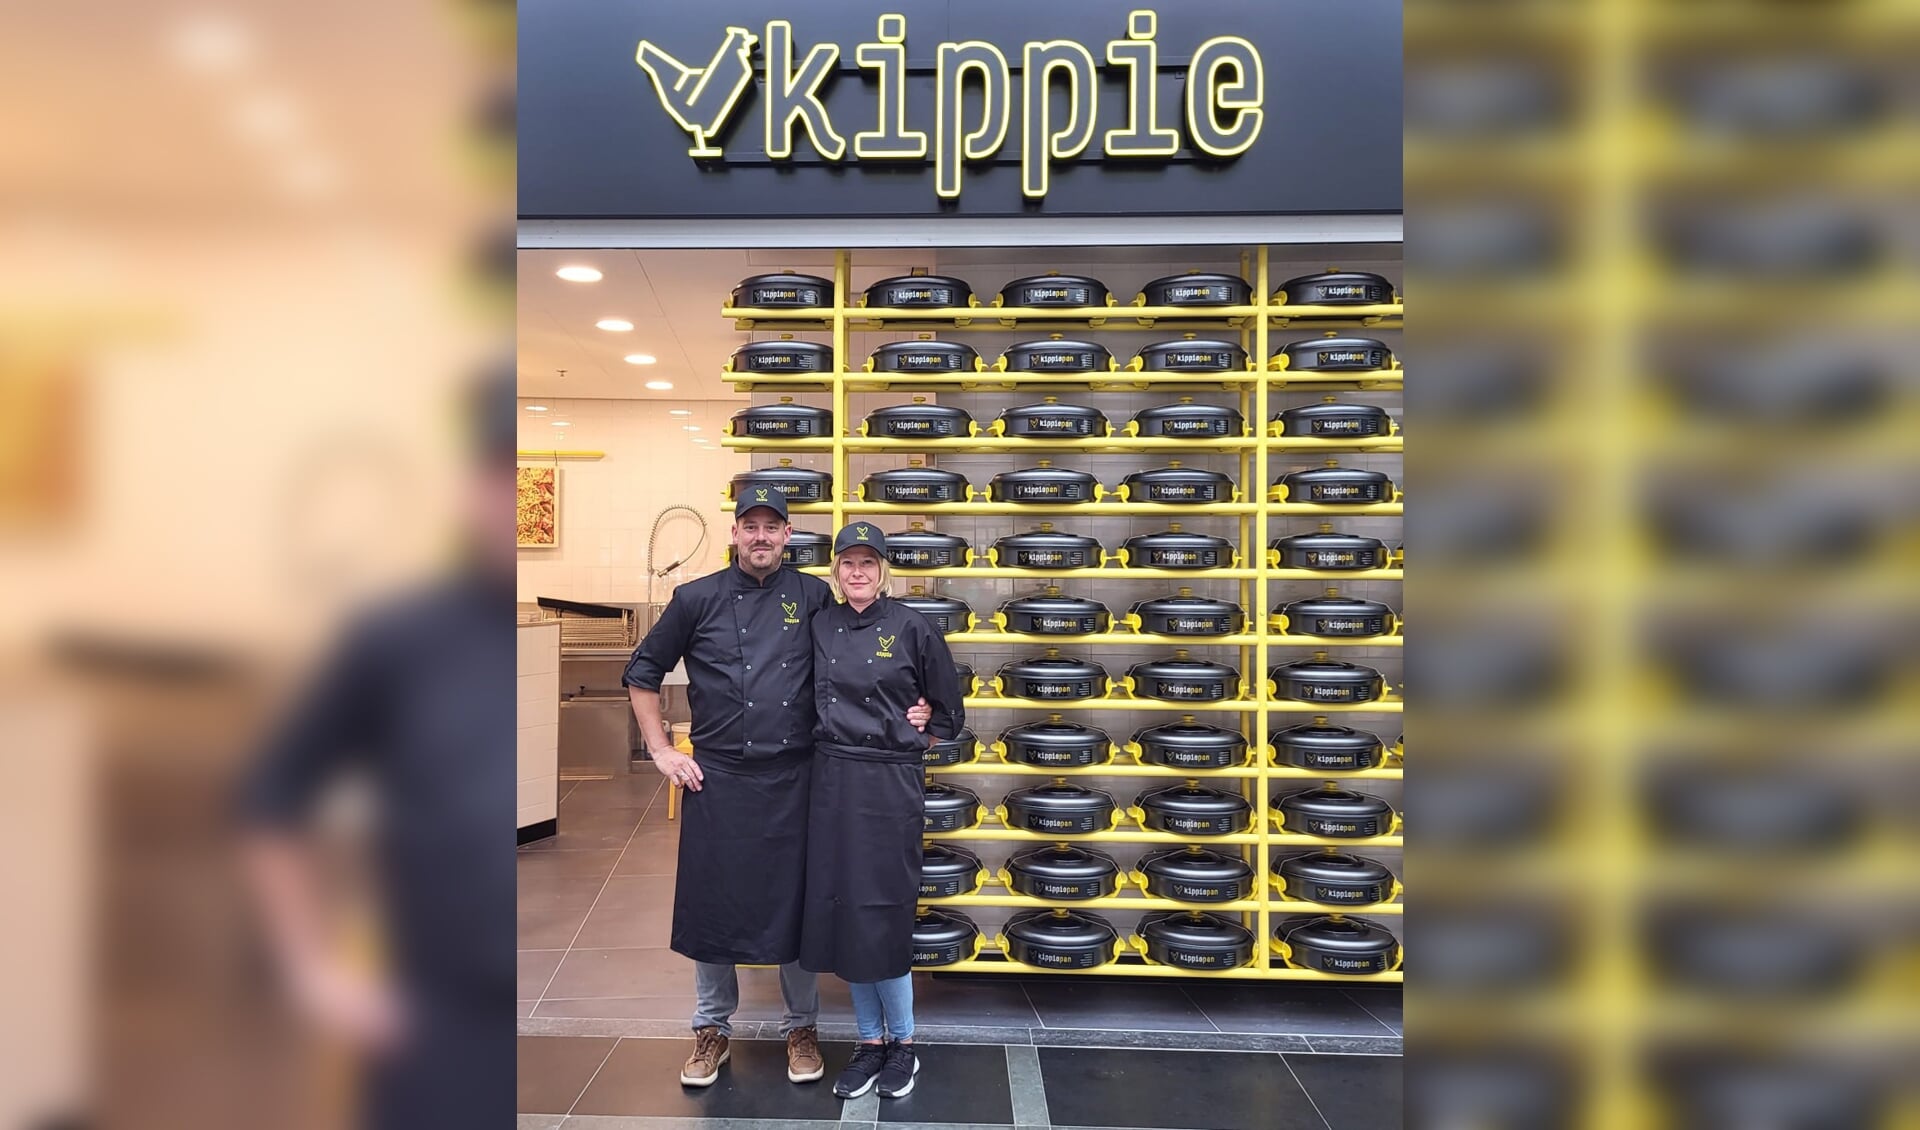 Filiaalmanager Sjoerd Oortwijn en zijn vrouw Anouk kijken al maanden uit naar de opening van de nieuwe Kippie in Naaldwijk.